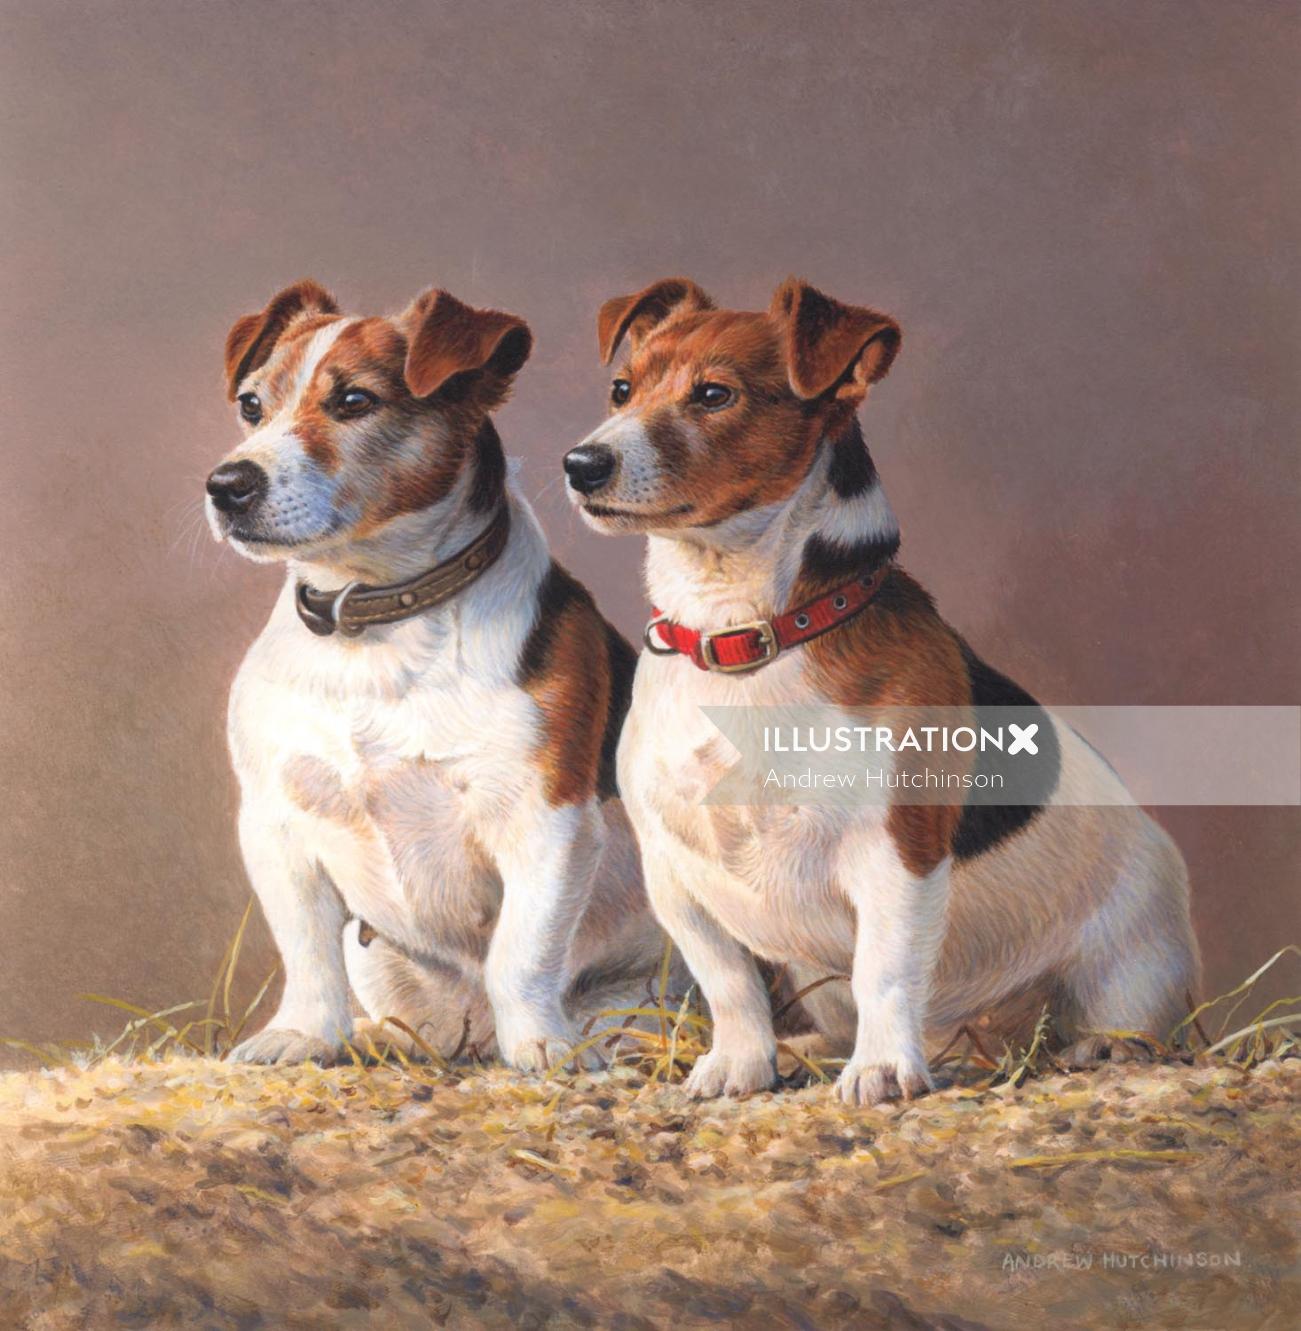 Animal Jack Russell Terriers illustration